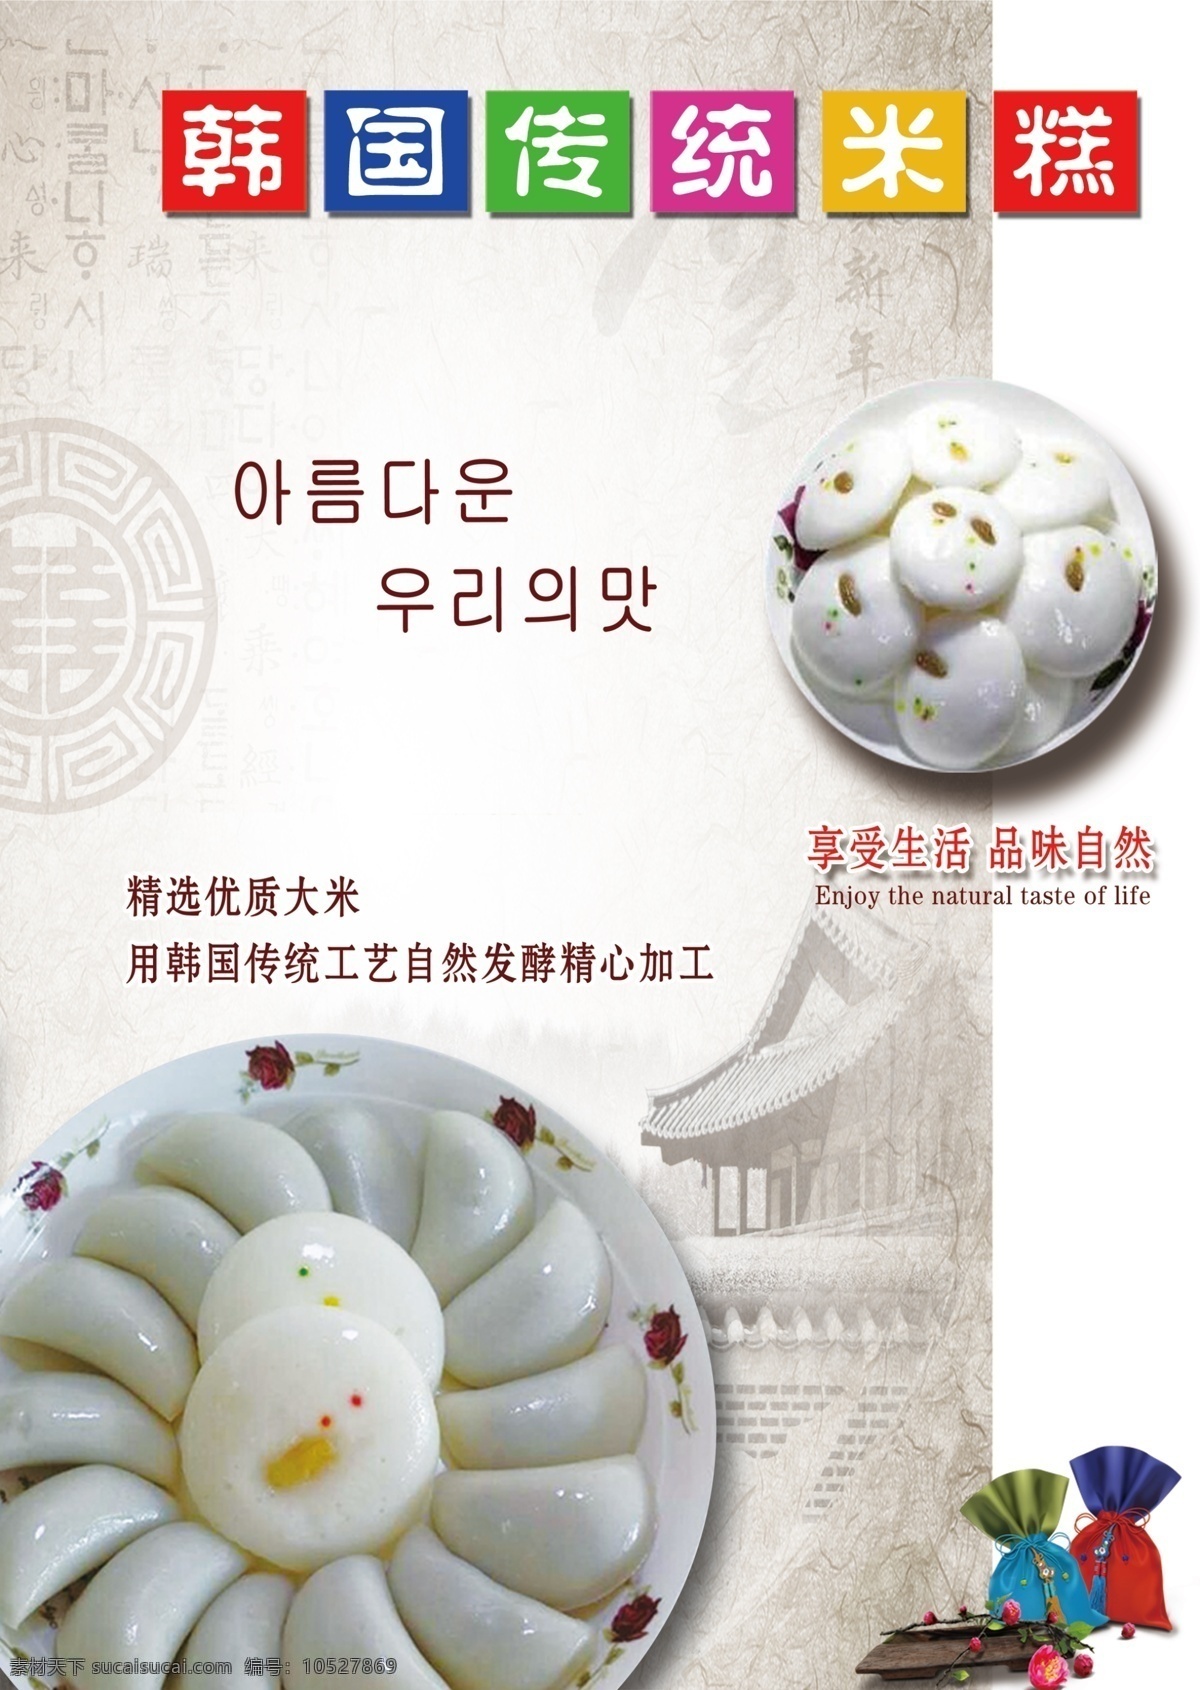 米糕海报 韩国 传统 米糕 复古风格 浅色背景 白色